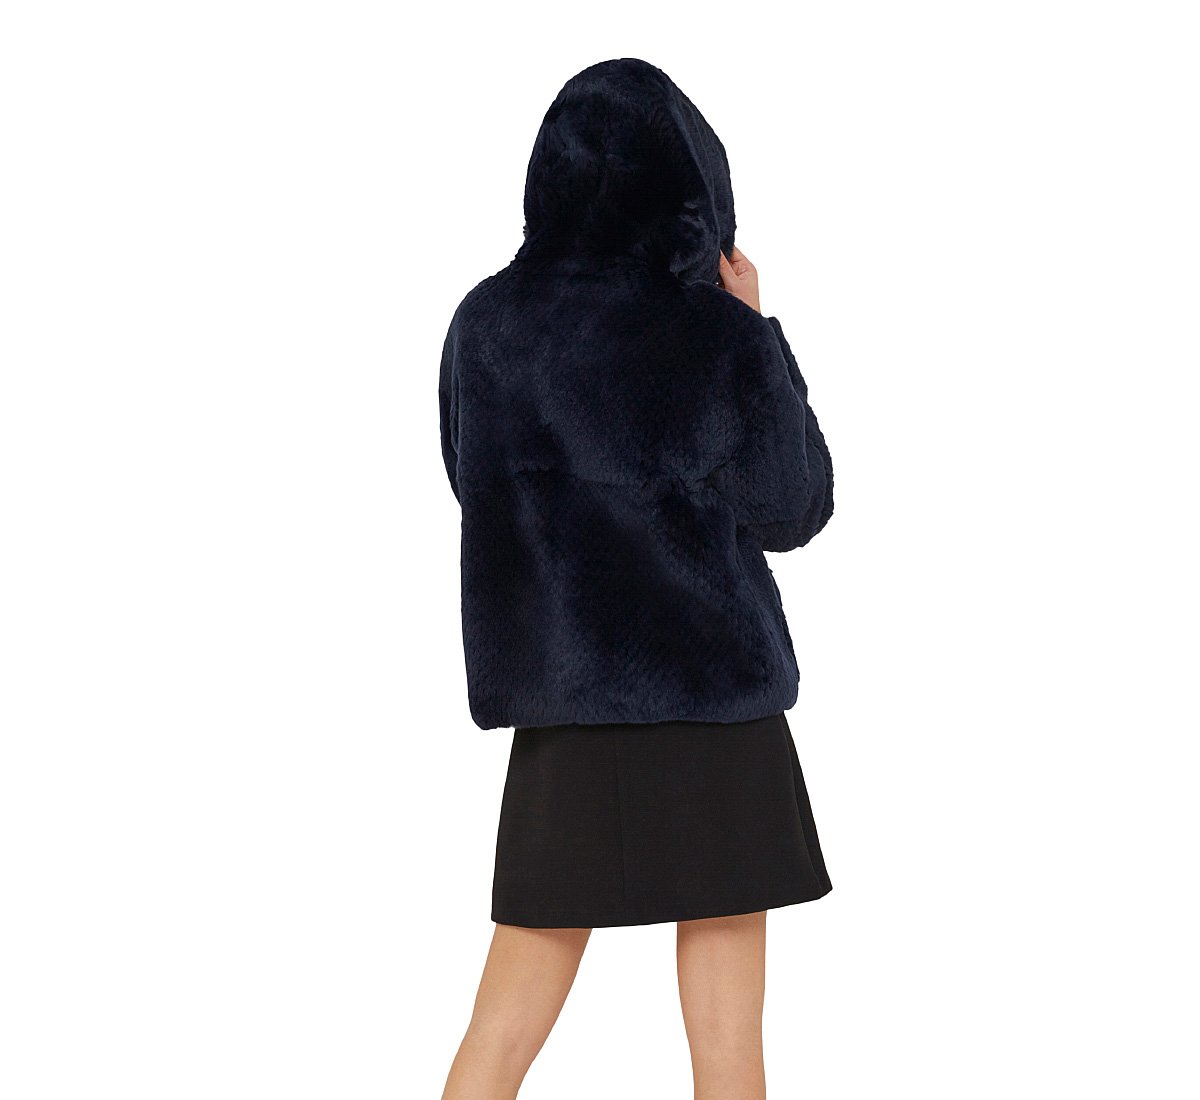 Genuine fur coat with hood